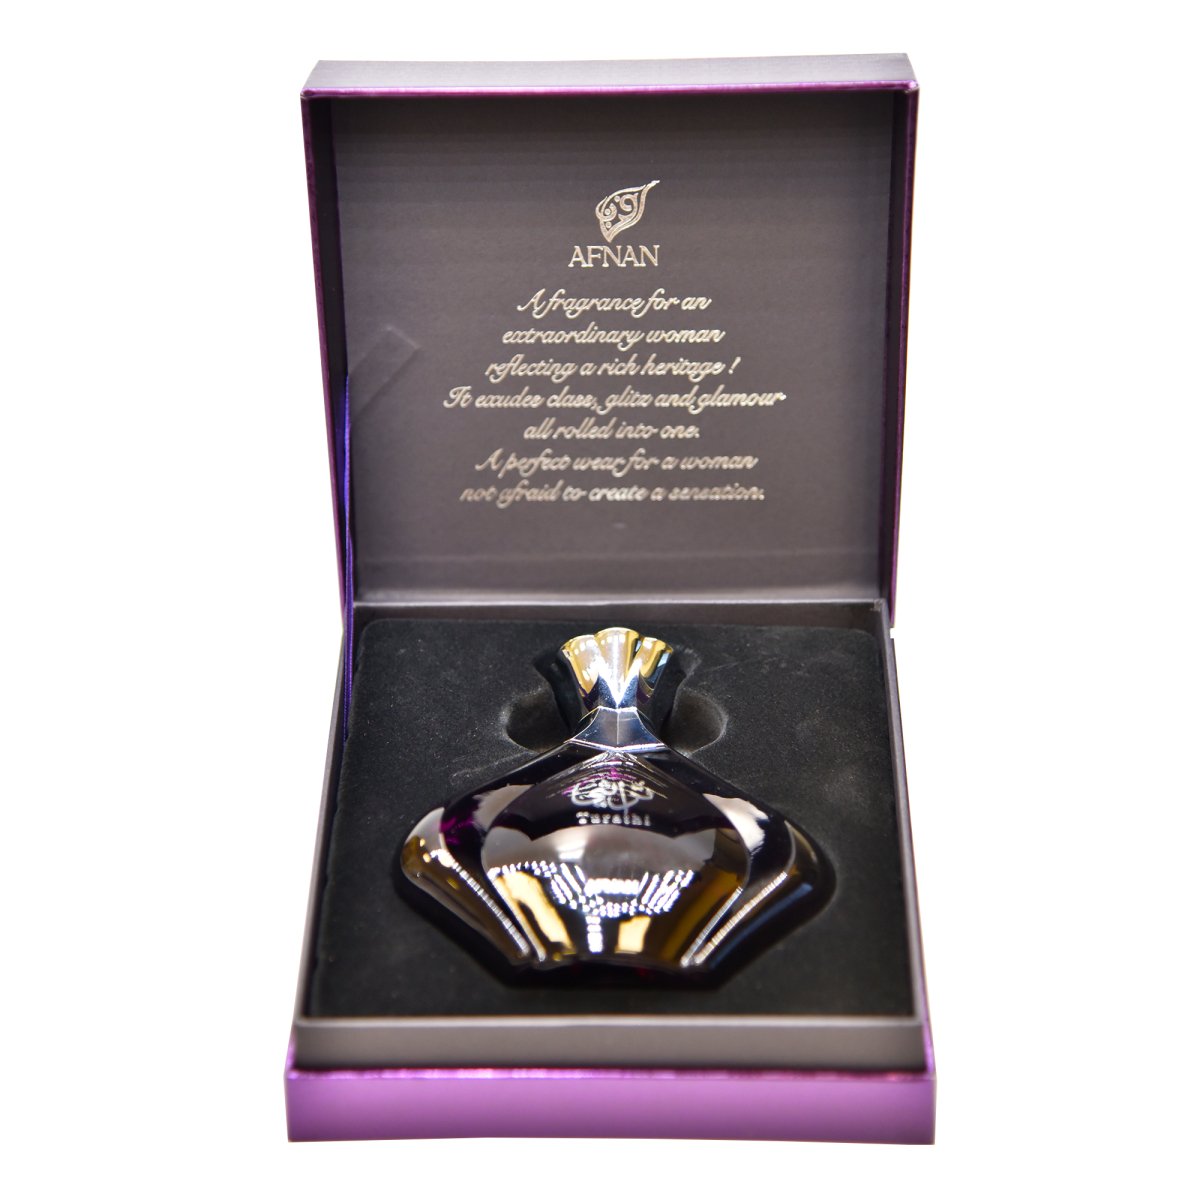  - Afnan - 3.0 oz - Eau de Parfum - Fragrance - 6290171070573 - Fragrance